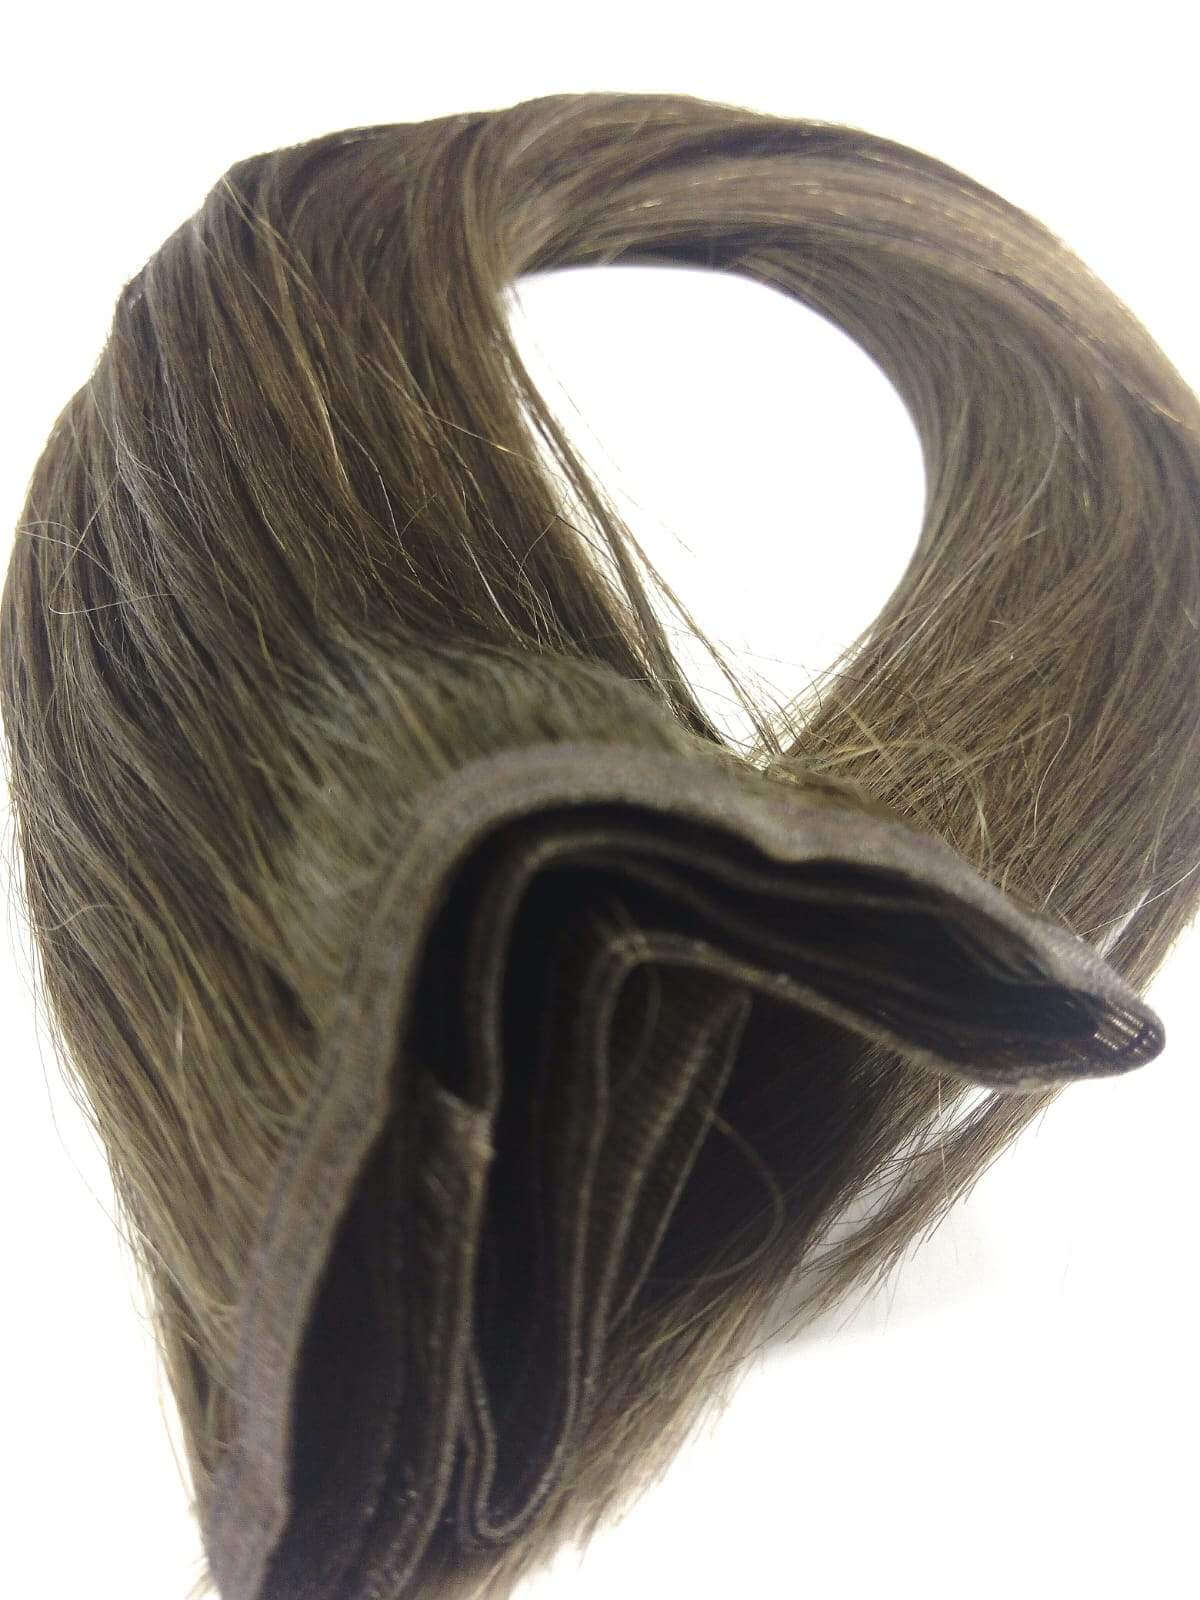 Brasilianisches reines Remy-Echthaar – Mono-Tresse, 18 Zoll, glatt, Farbe 6, 100 g – schneller Versand